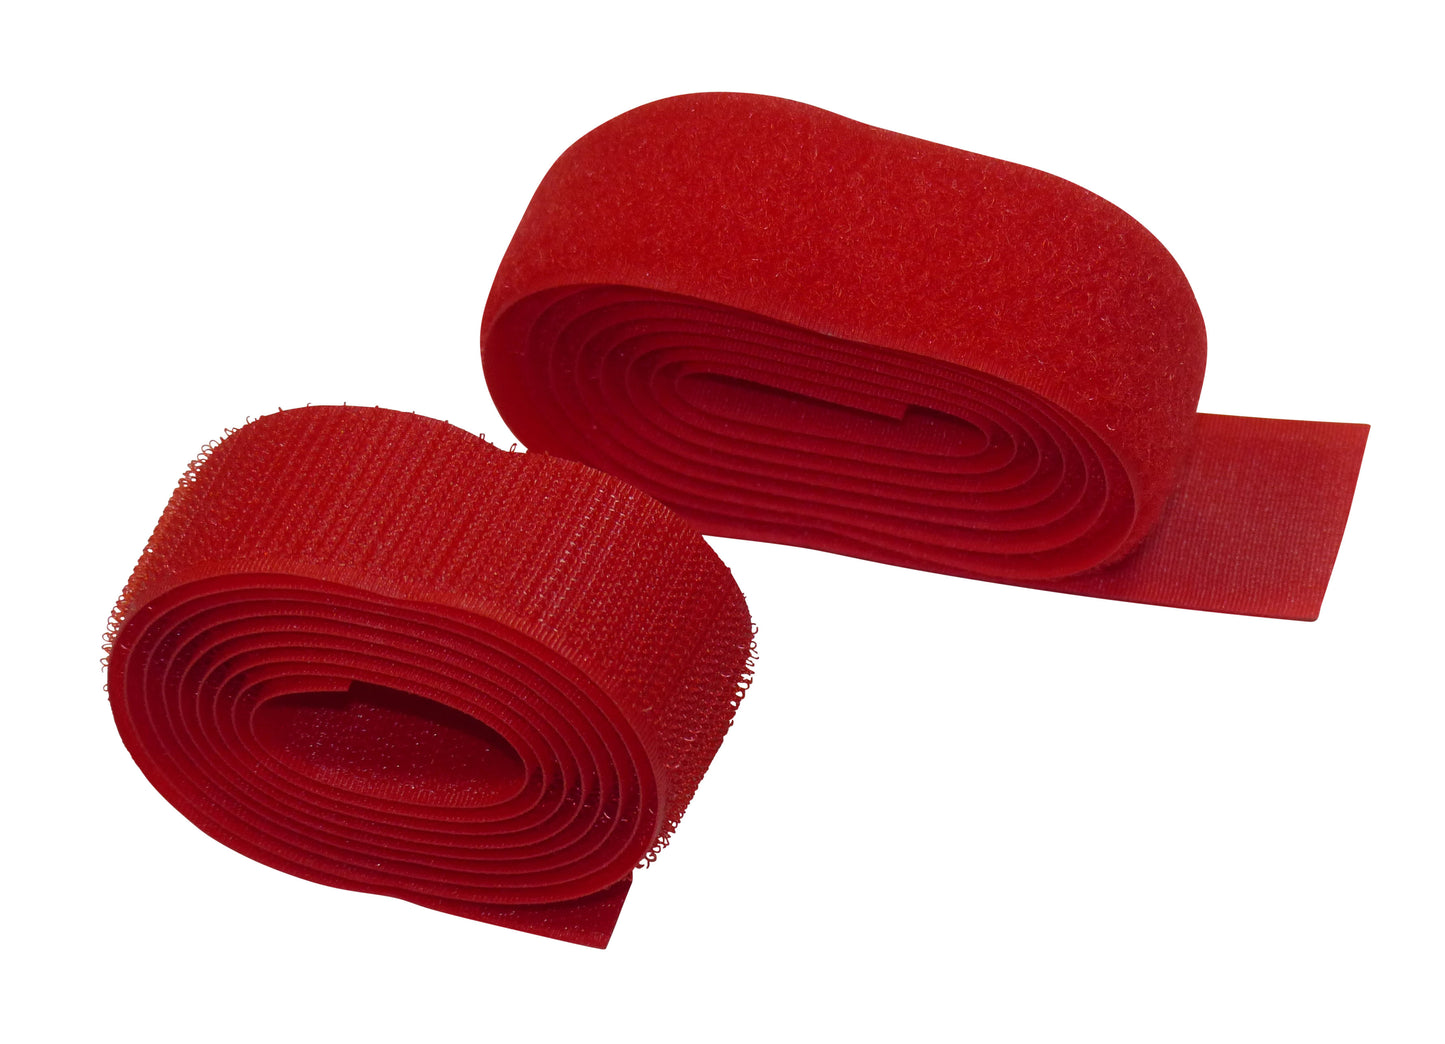 Benristraps 25mm sewable hook and loop tape (2 metres) both hook and loop in red